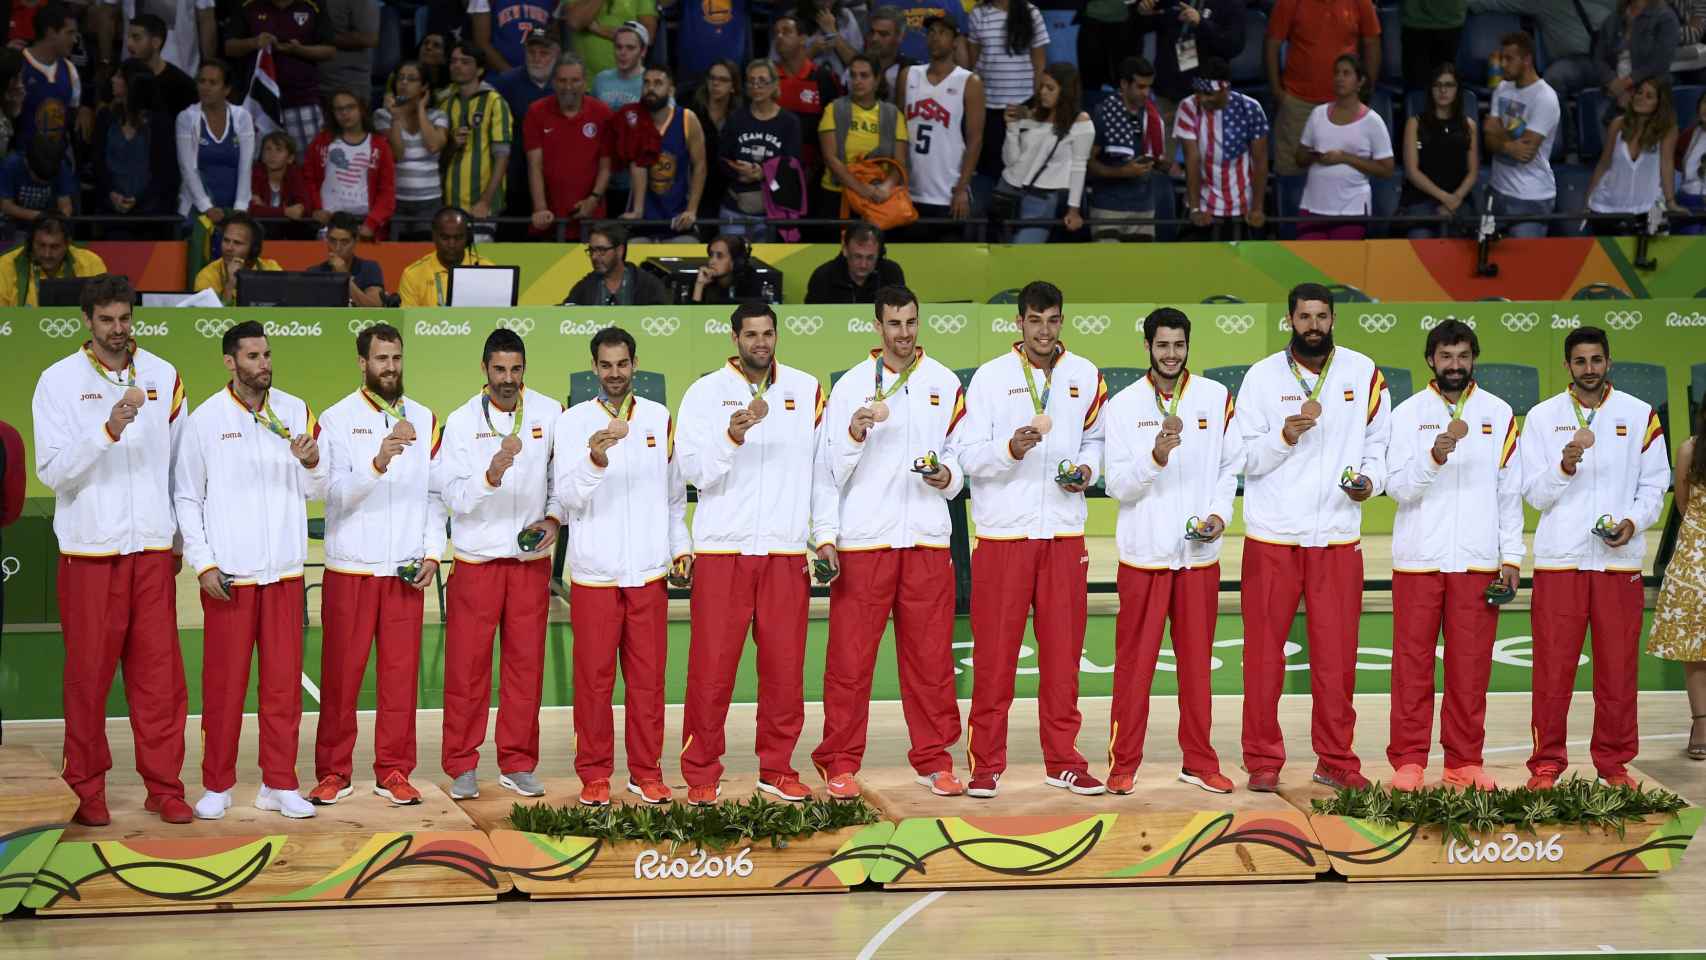 Los jugadores españoles en el podio olímpico con el bronce.